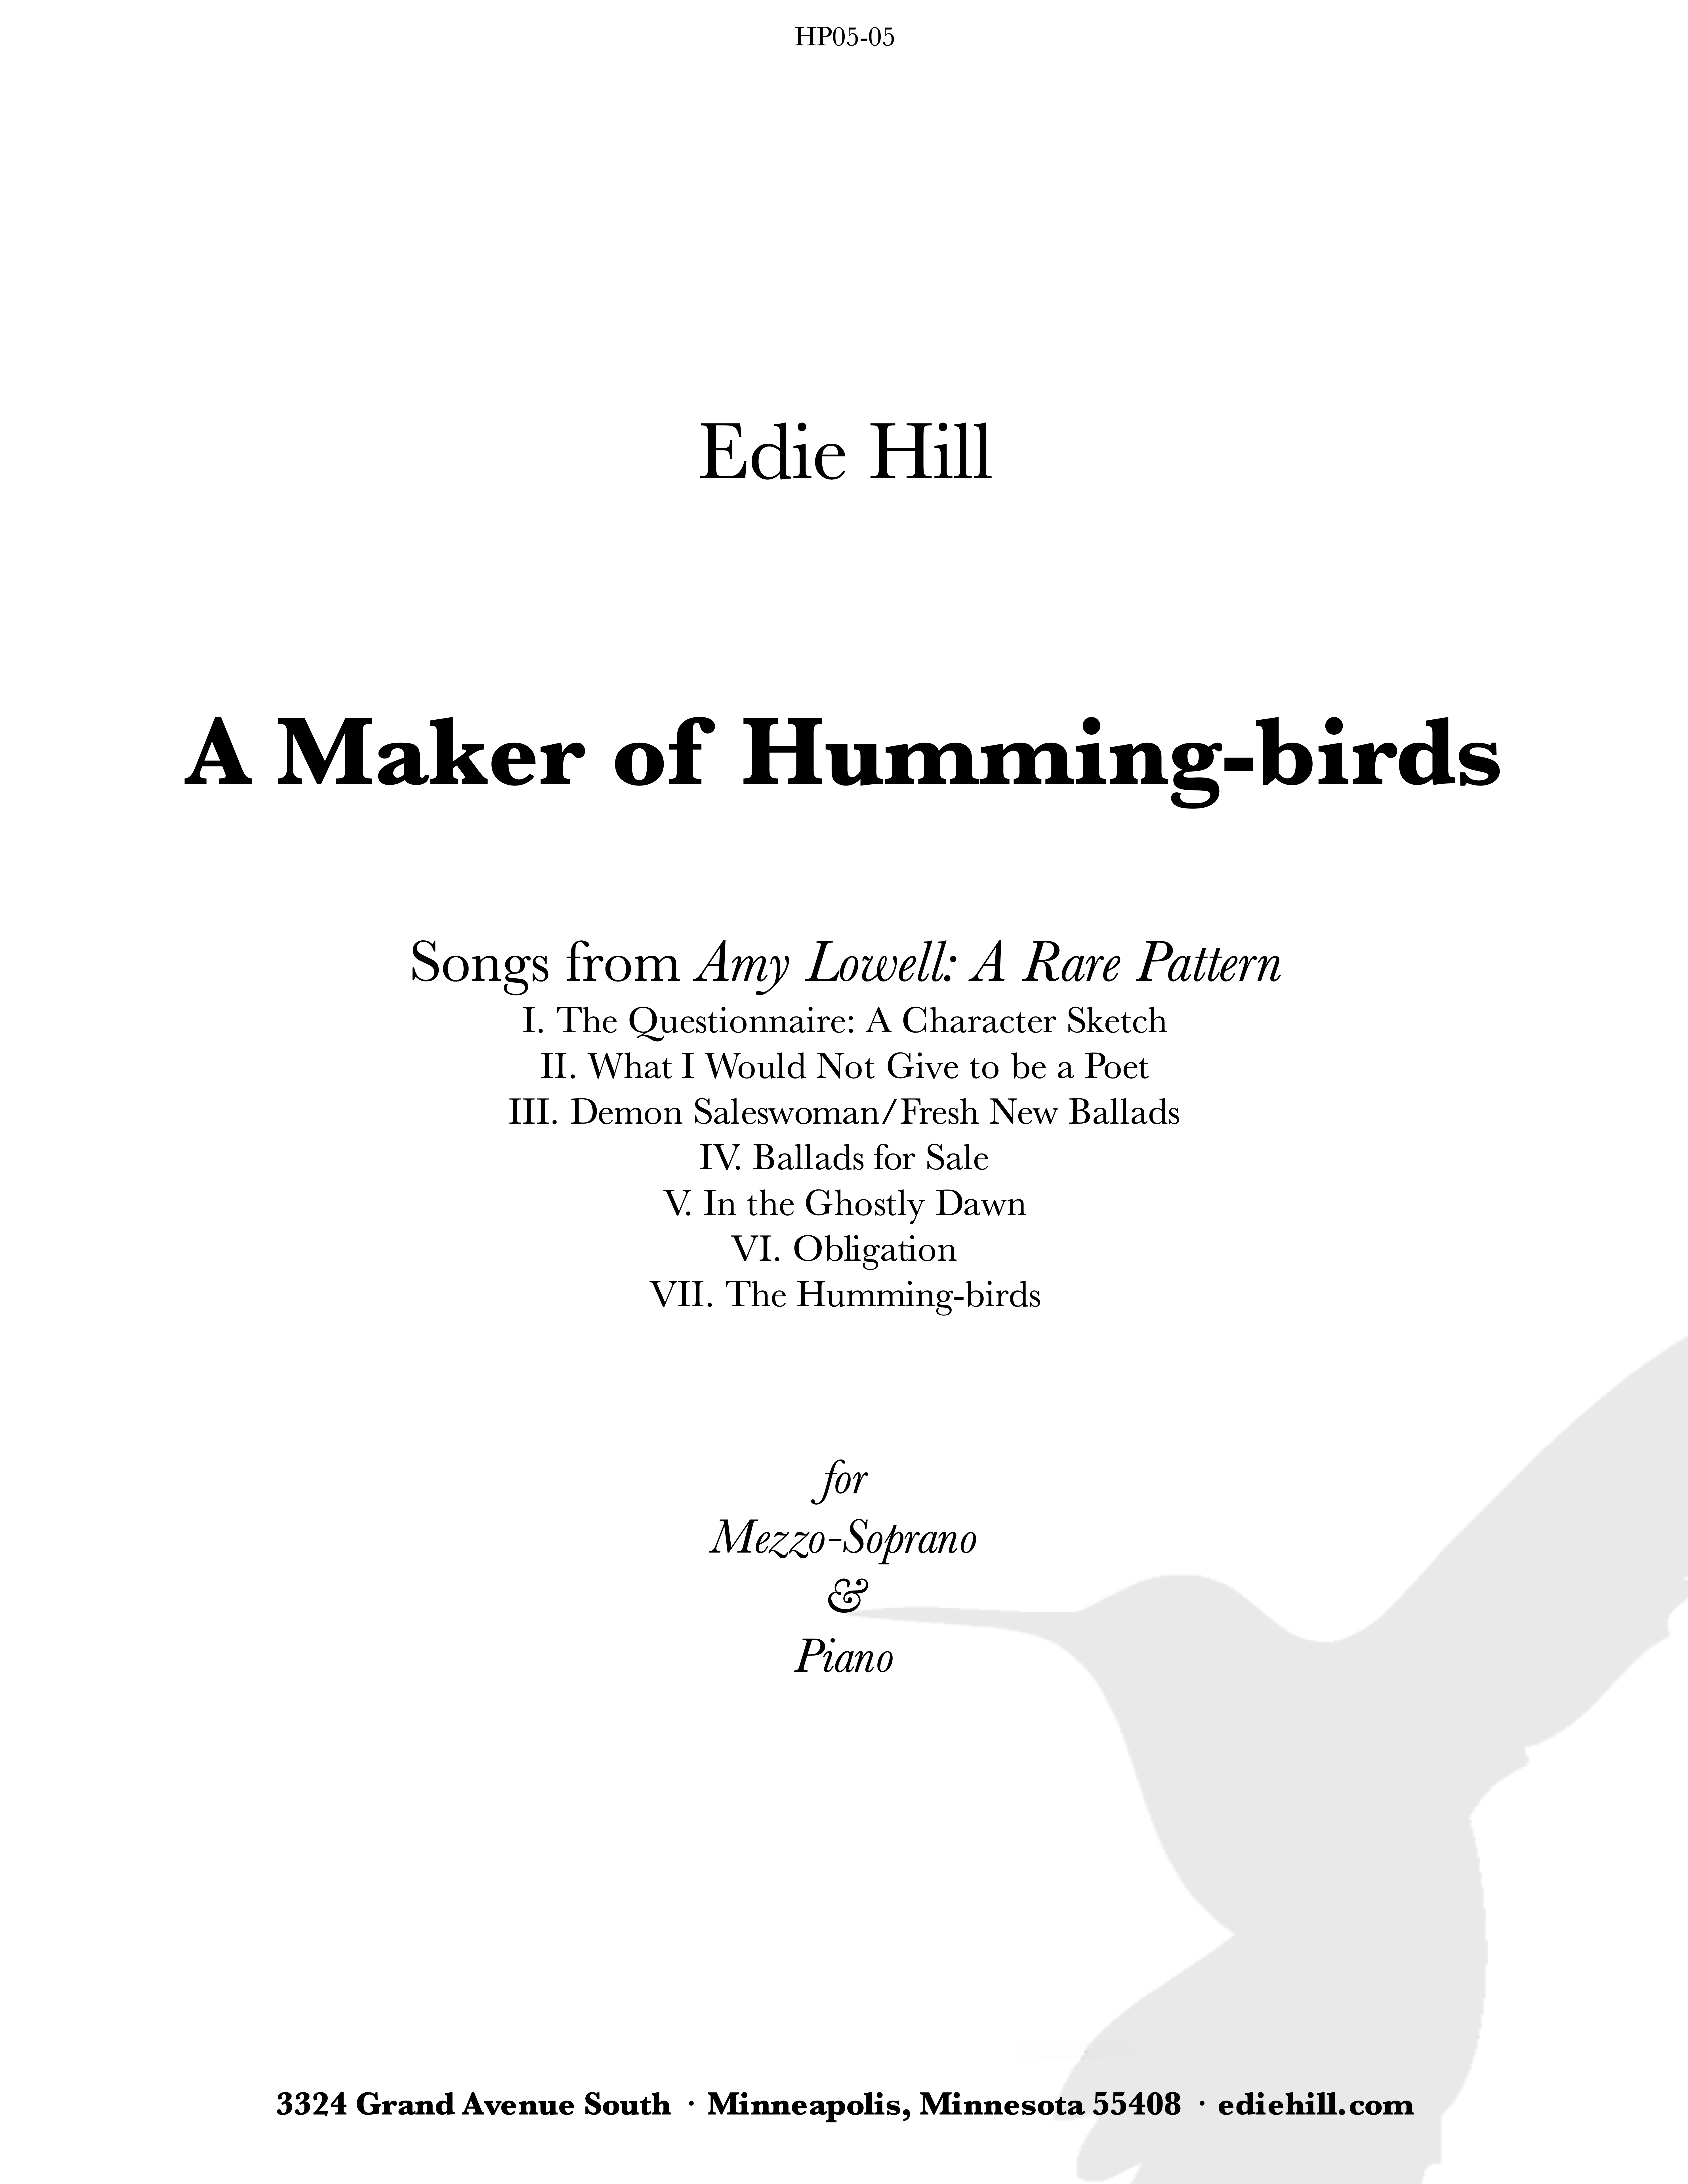 Maker of Humming-birds, A